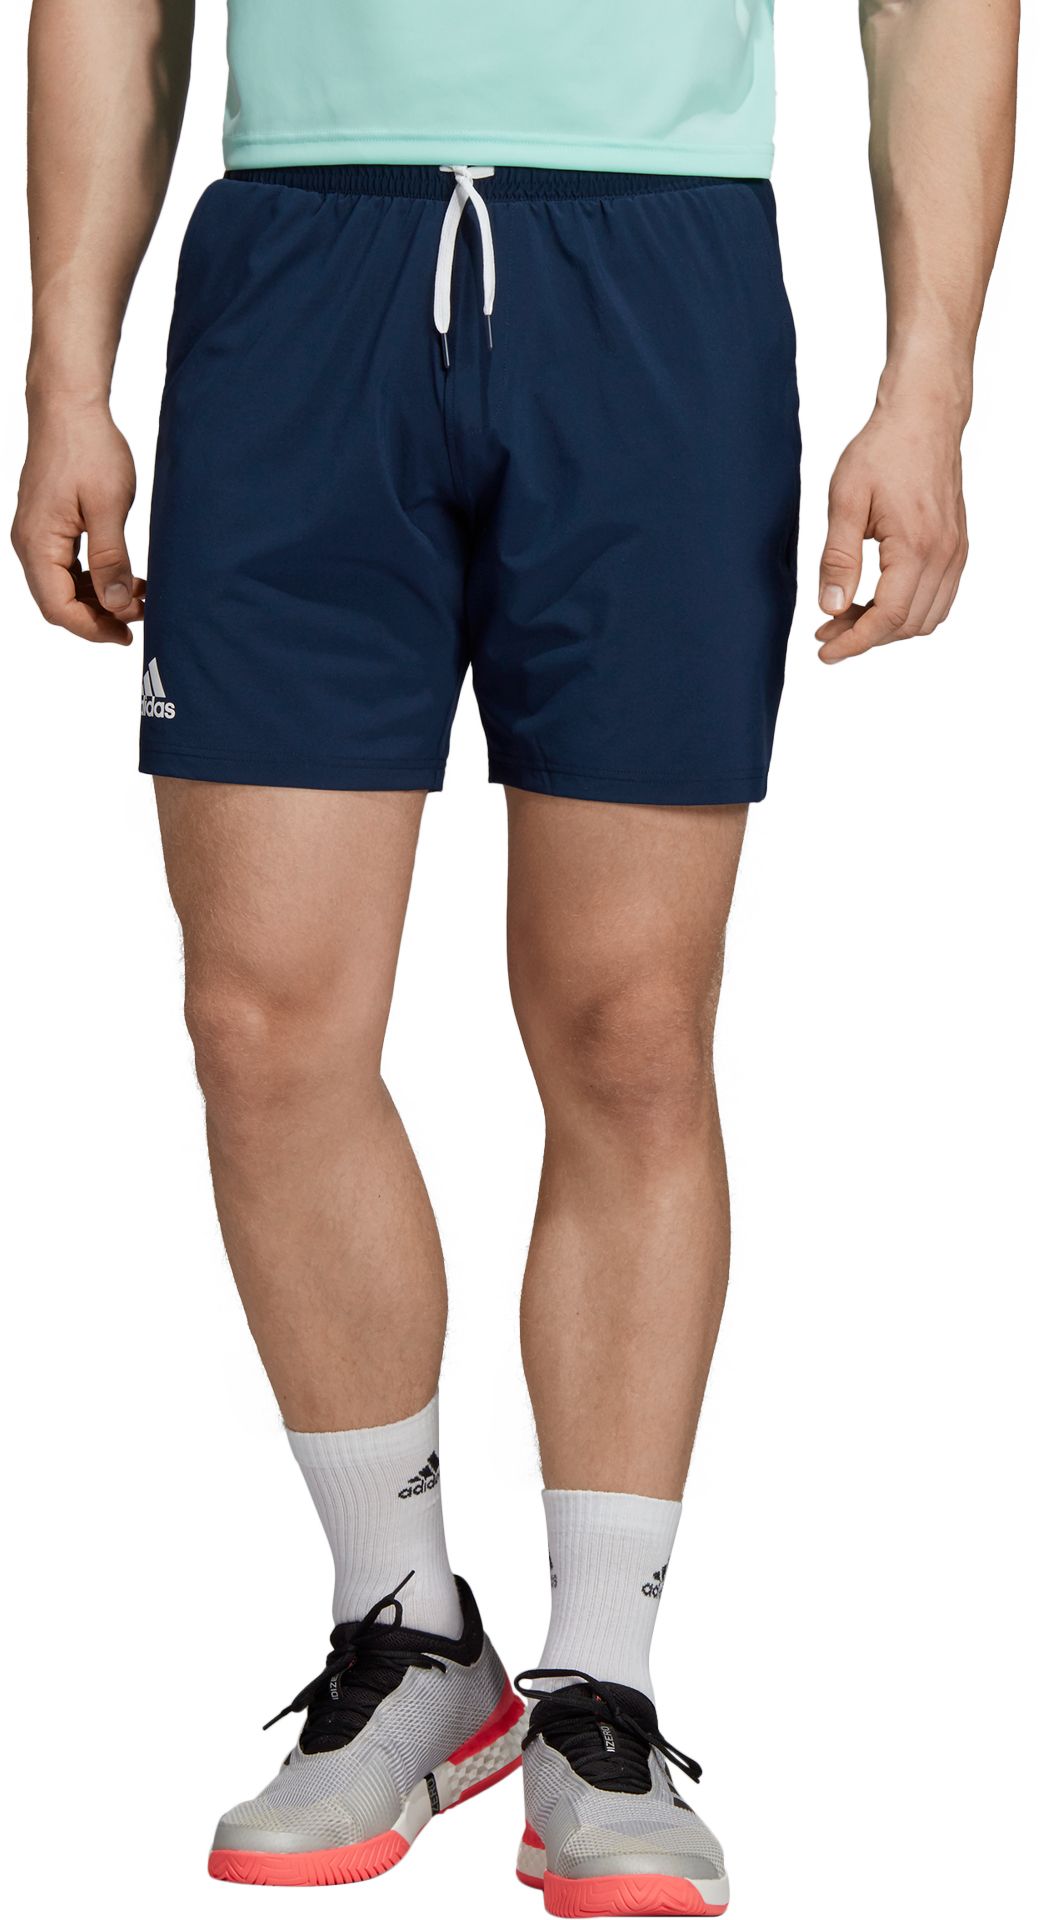 adidas club shorts 7 inch